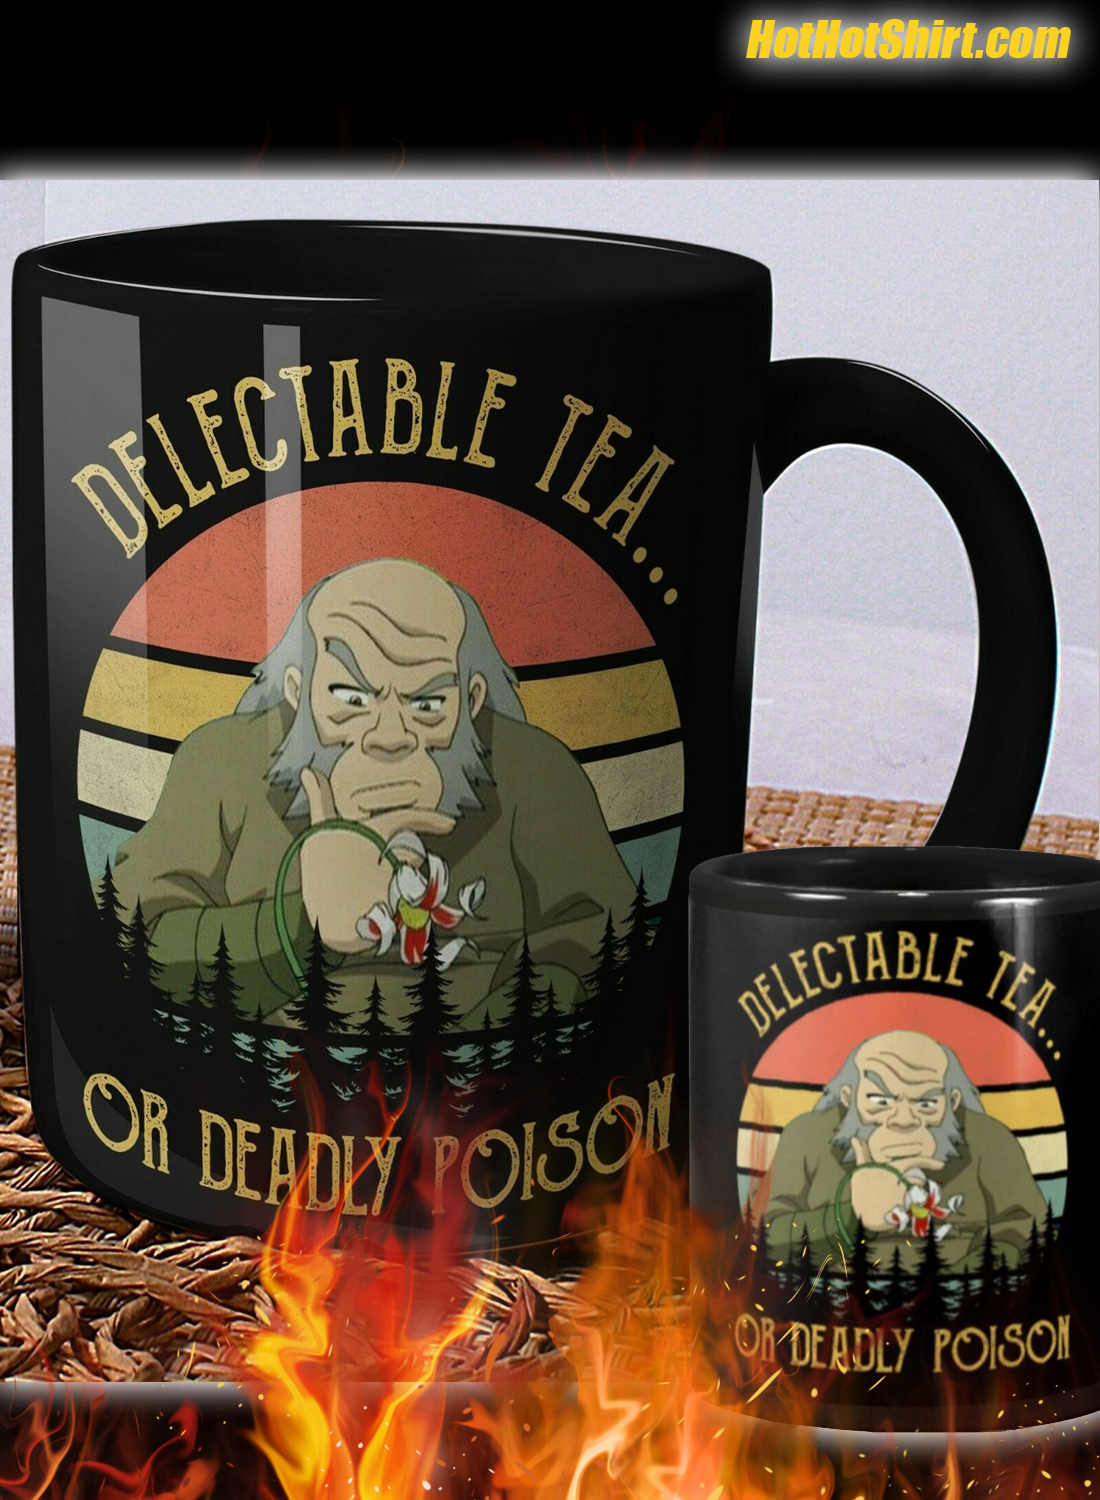 Delectable Tea Or Deadly Poison Mug